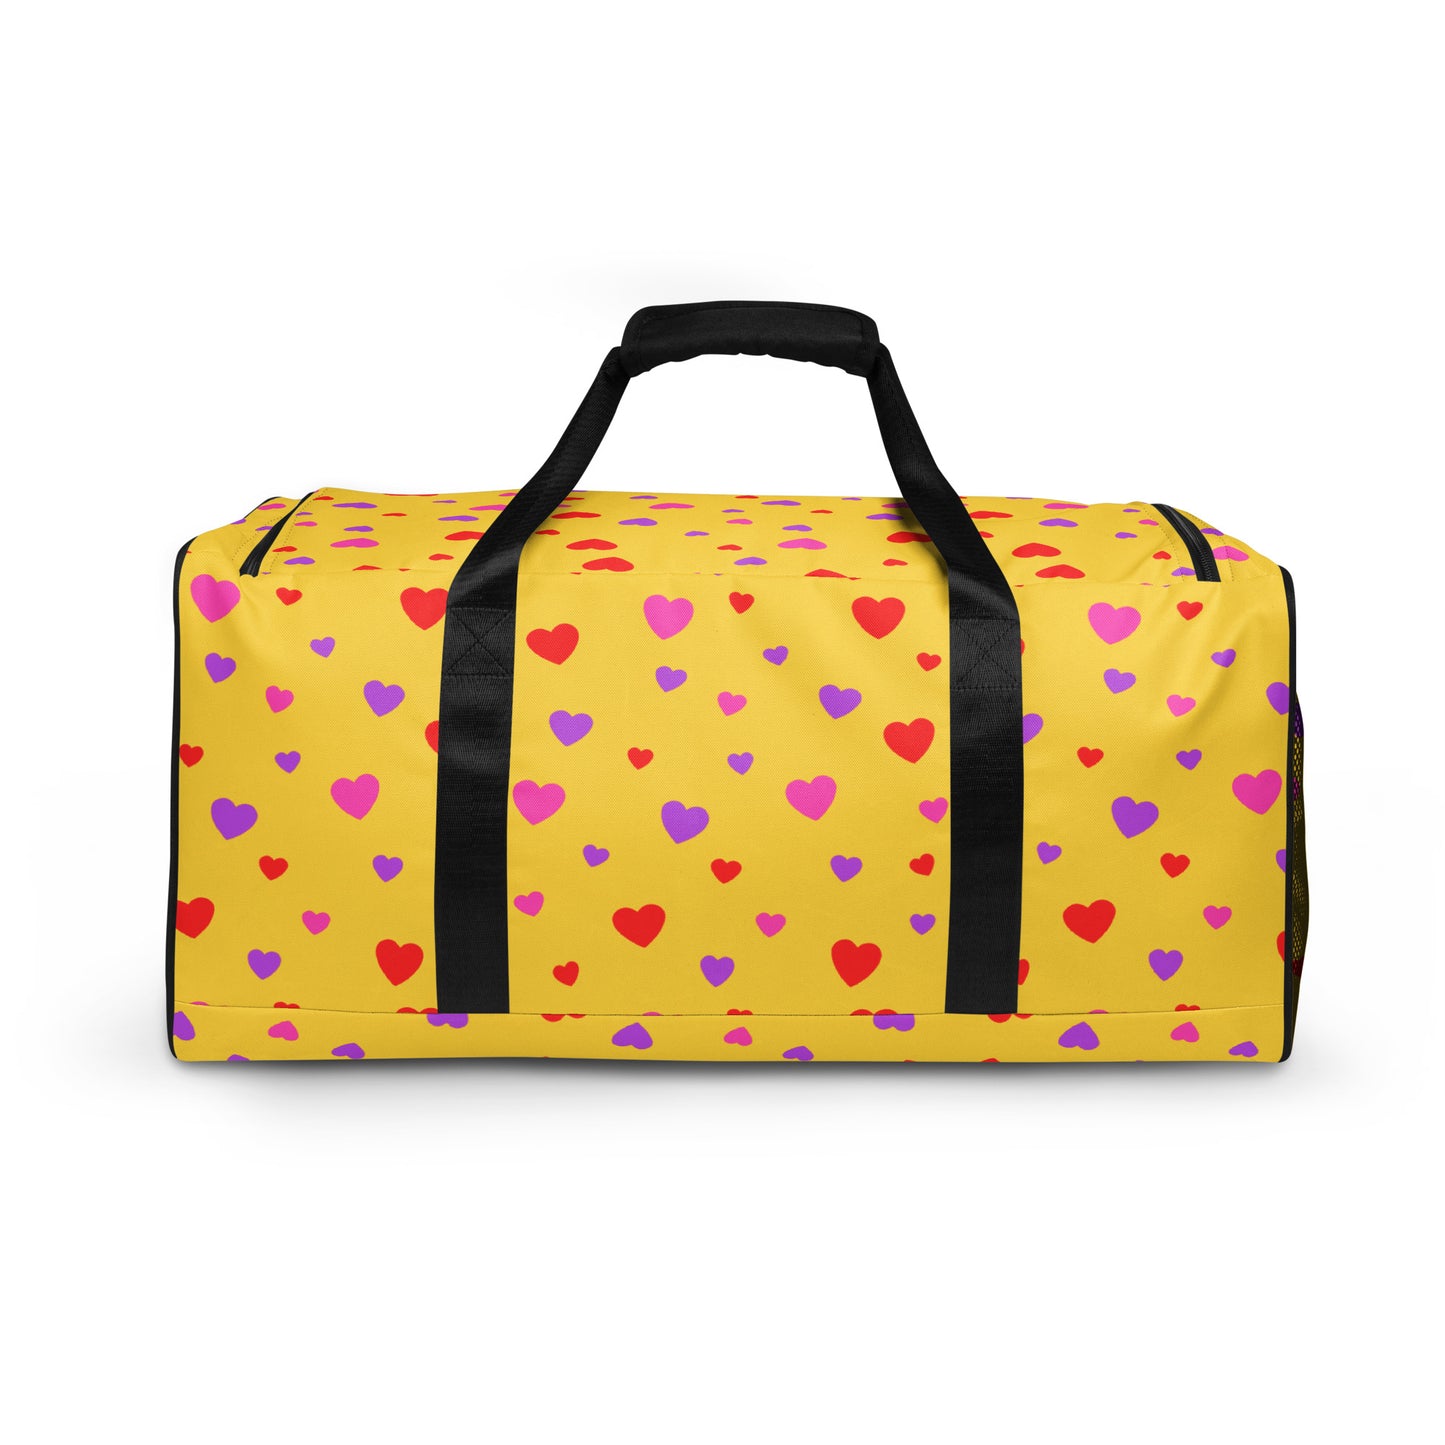 Lover Duffle Bag